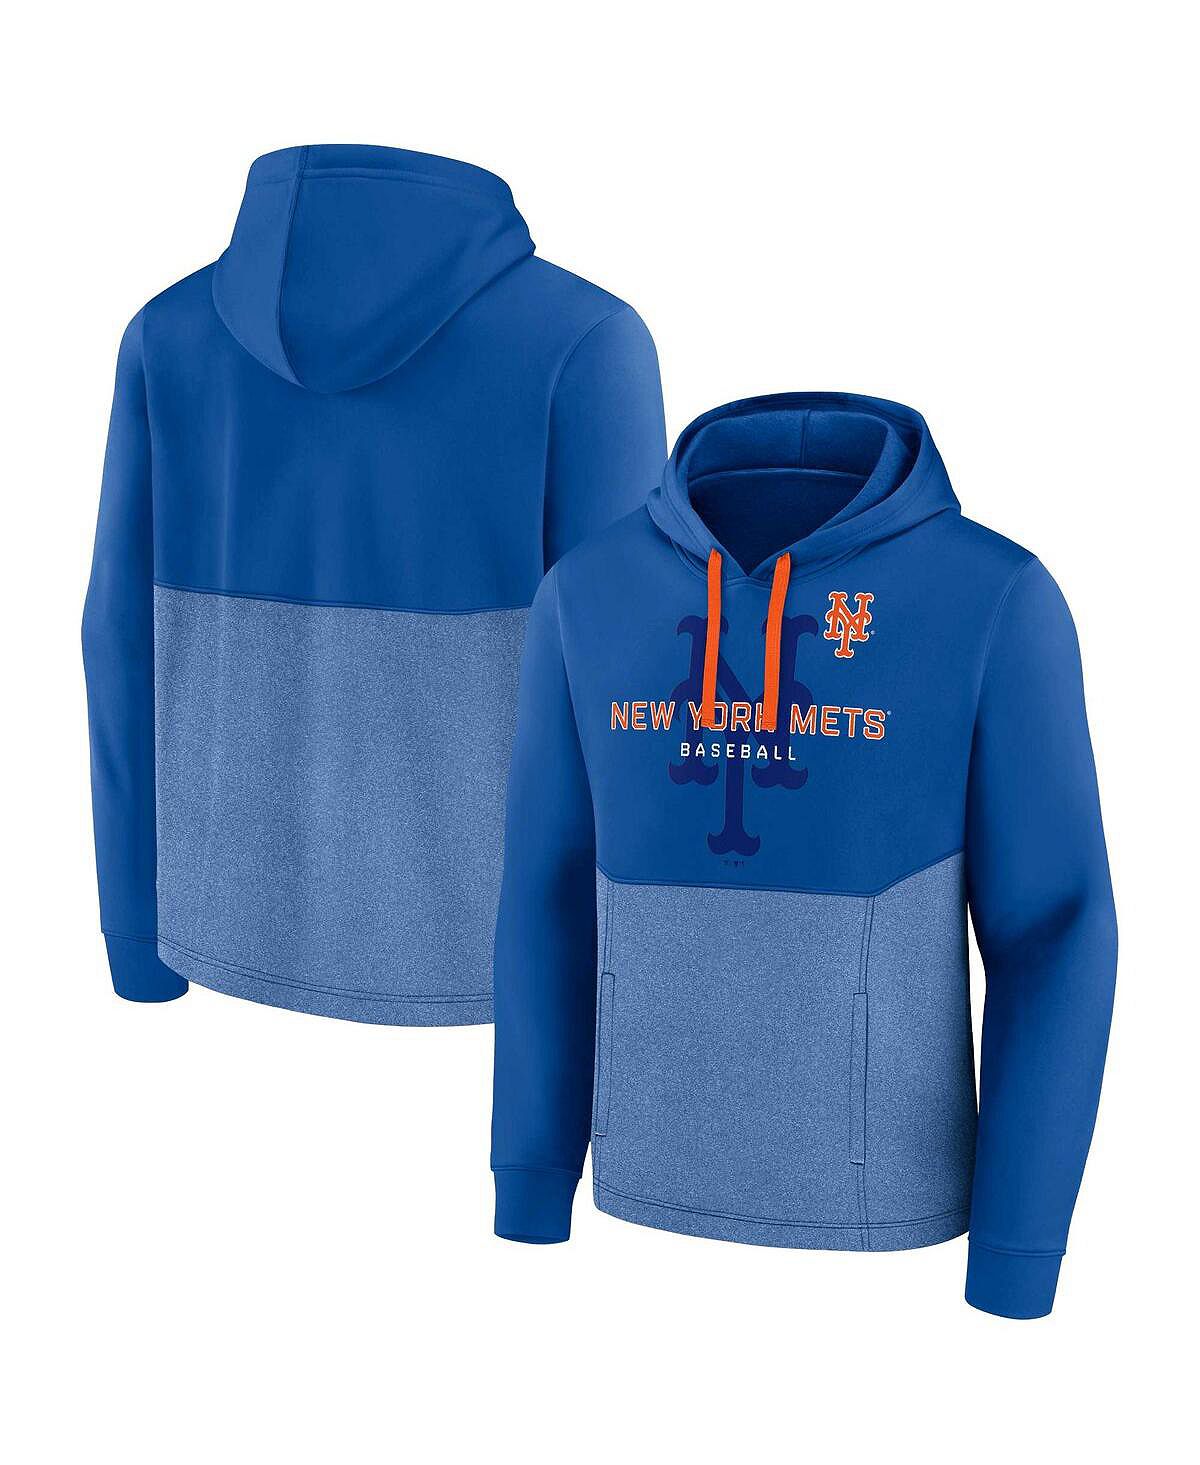 Мужской пуловер с капюшоном с логотипом Royal New York Mets Call the Shots Fanatics